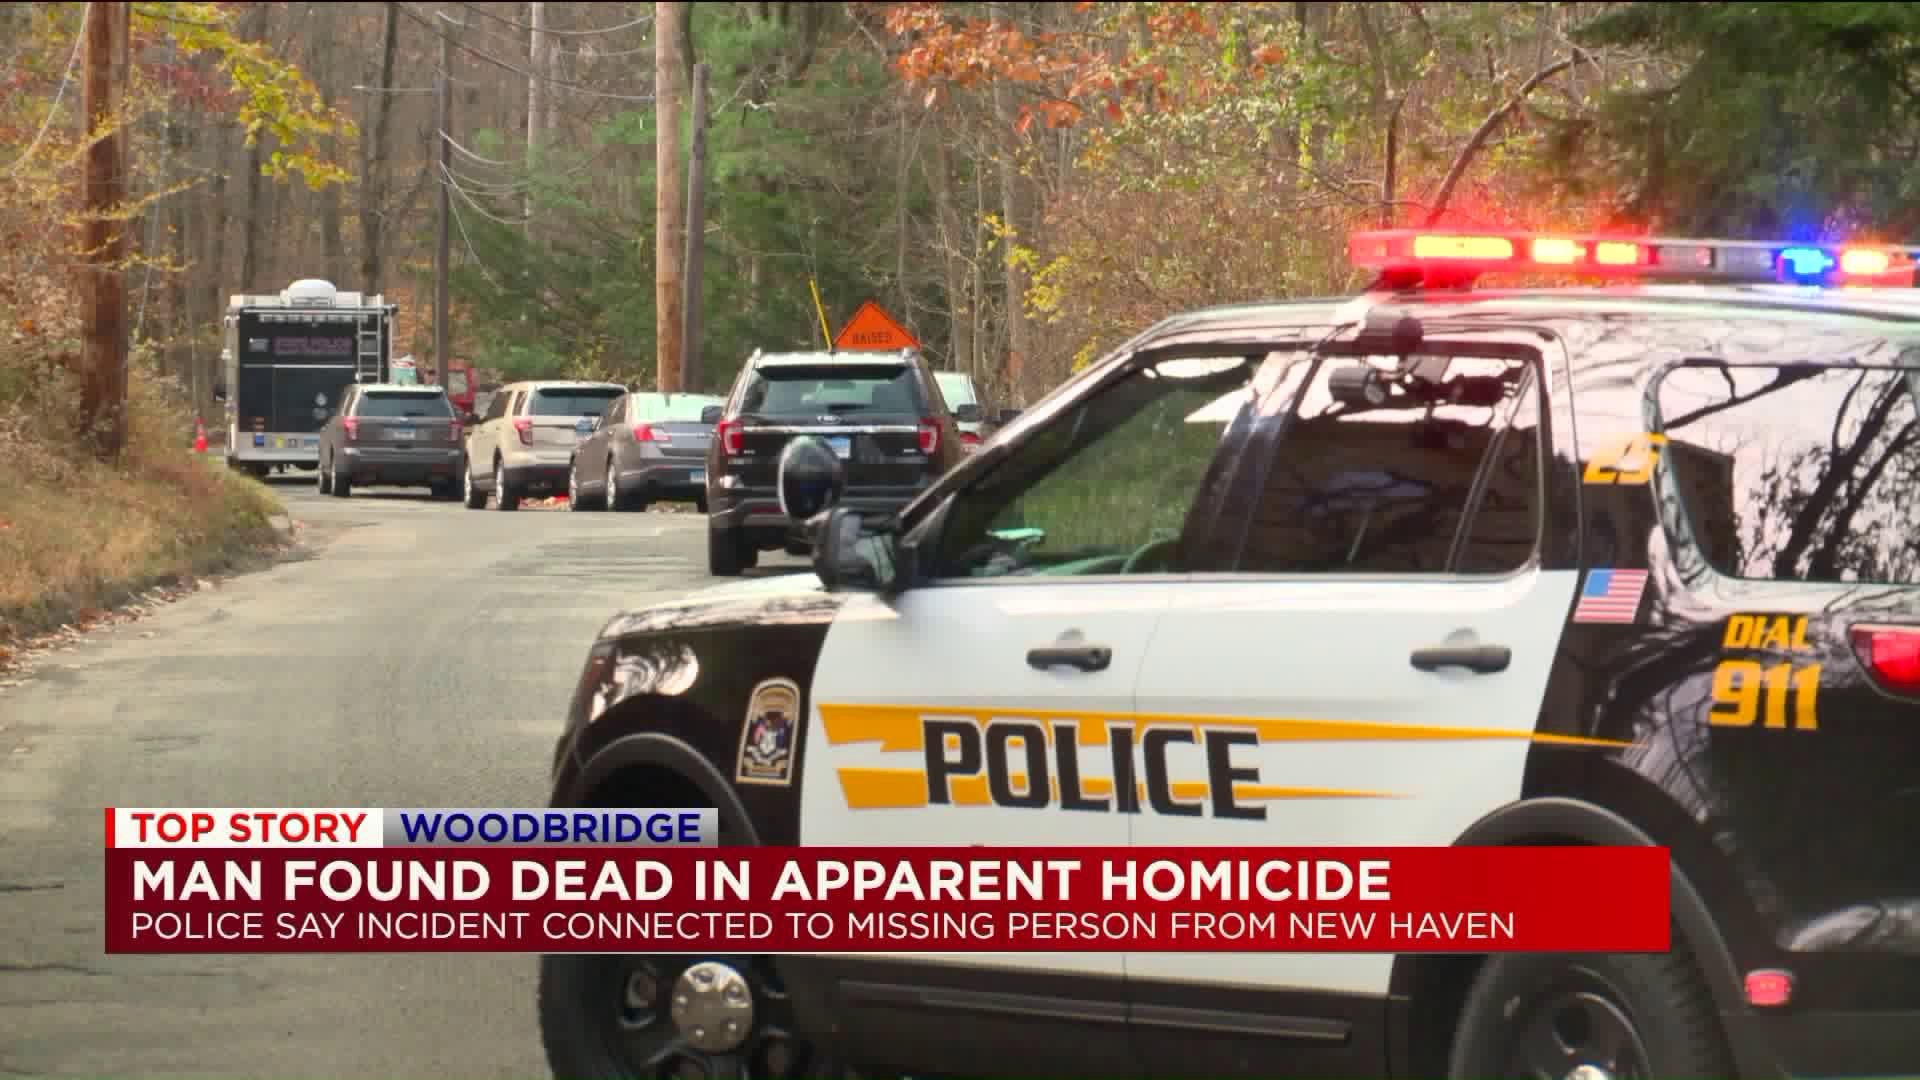 Woodbridge apparent homicide